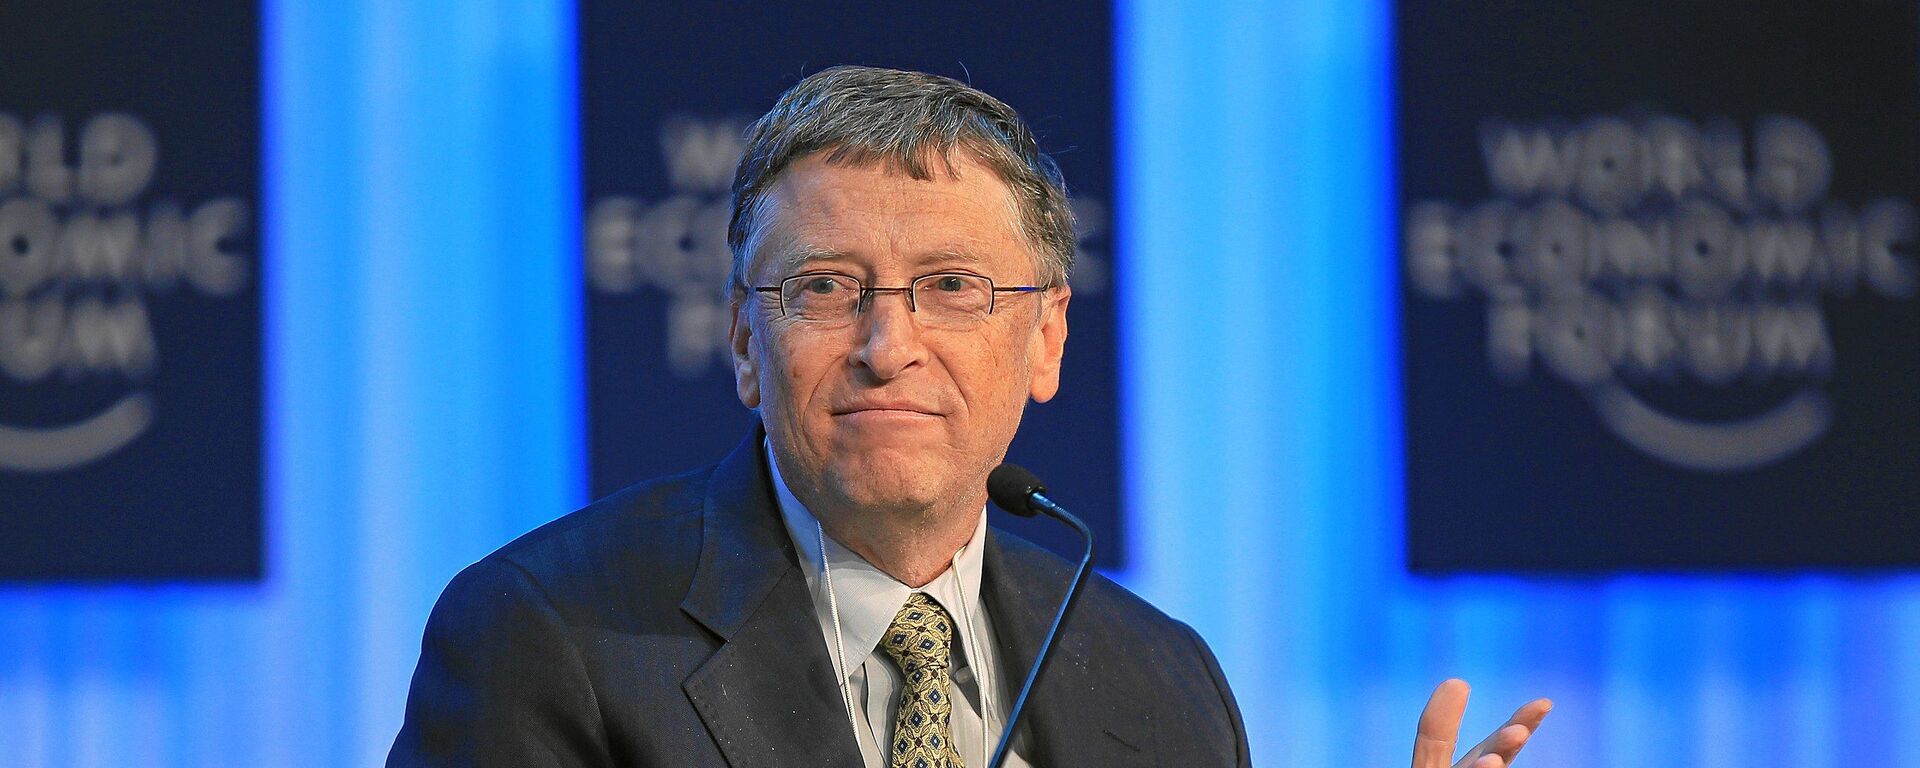 Milijarder i osnivač Majkrosofta Bil Gejts na Svetskom ekonomskom forumu 2013. godine - Sputnik Srbija, 1920, 05.05.2022